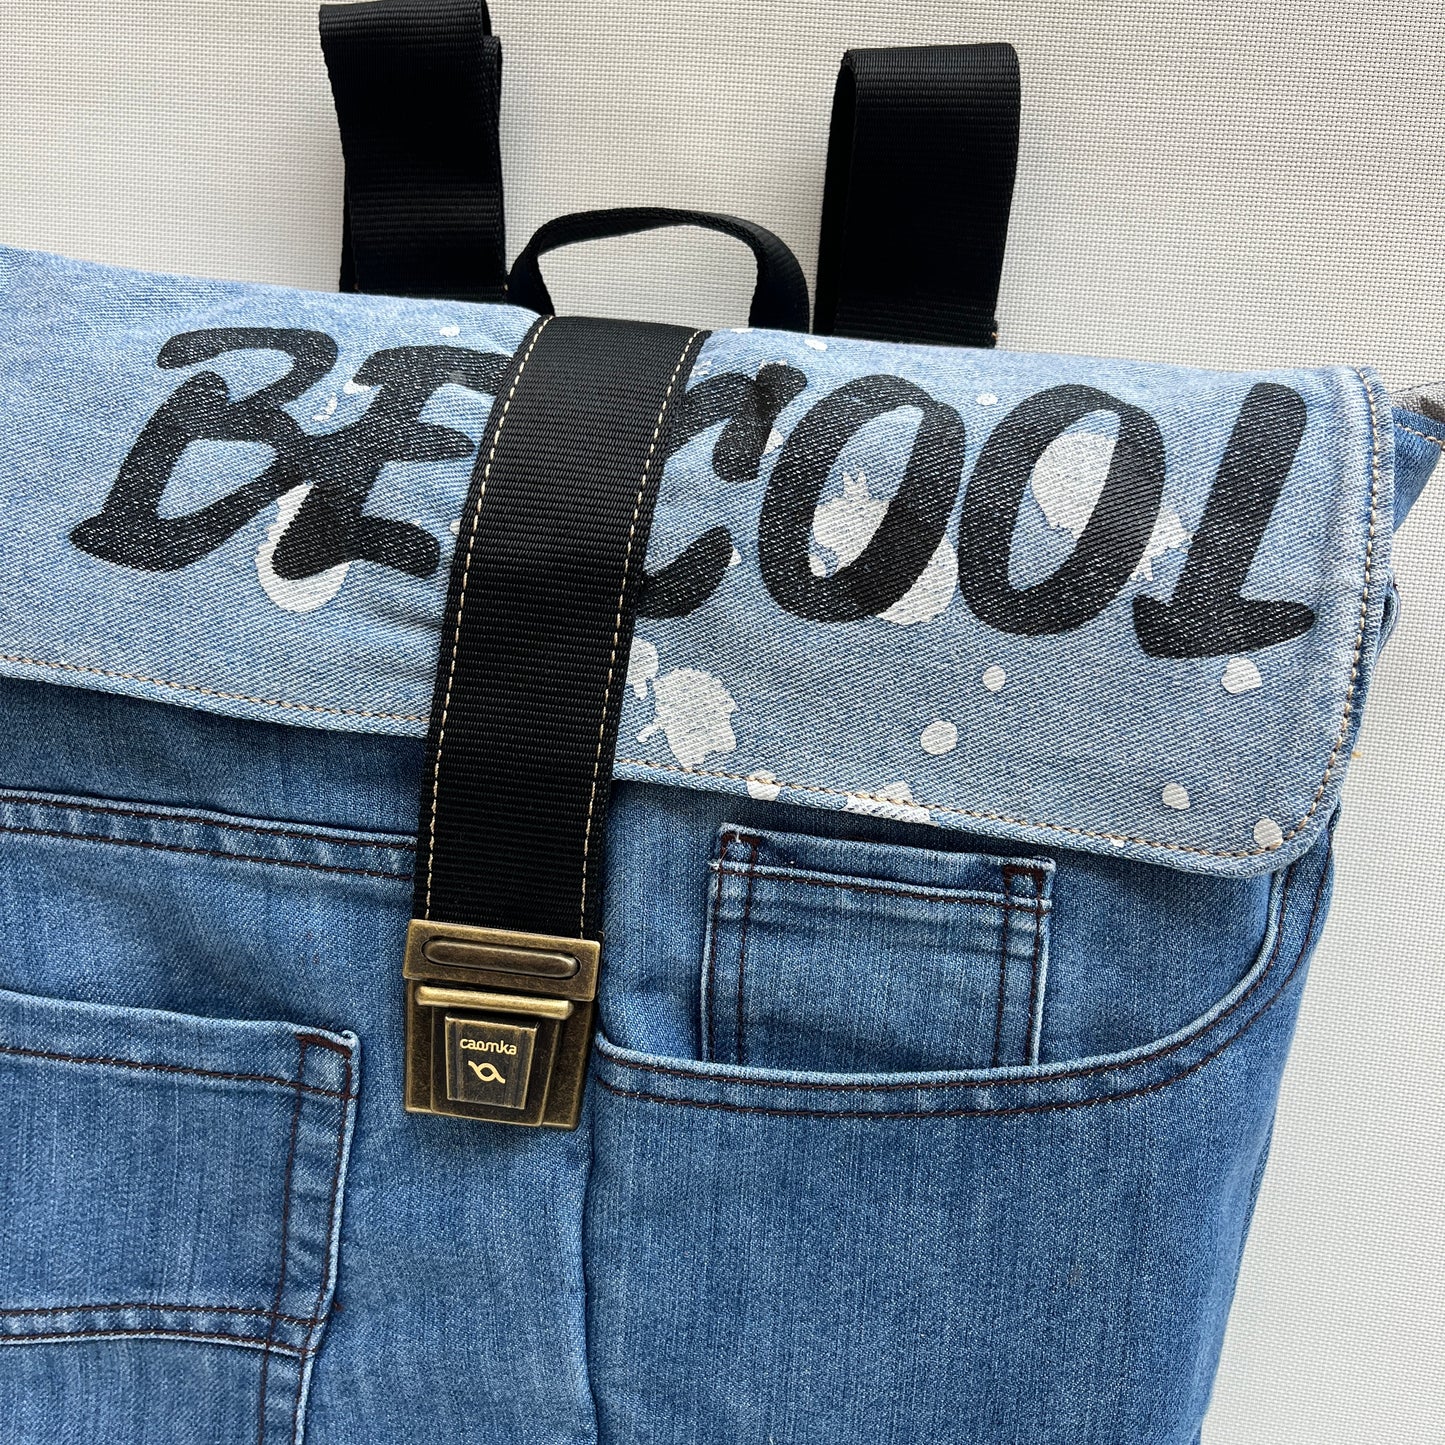 Mochila Top Caomka Recycled ♻️ Jeans · Pieza Única 15574